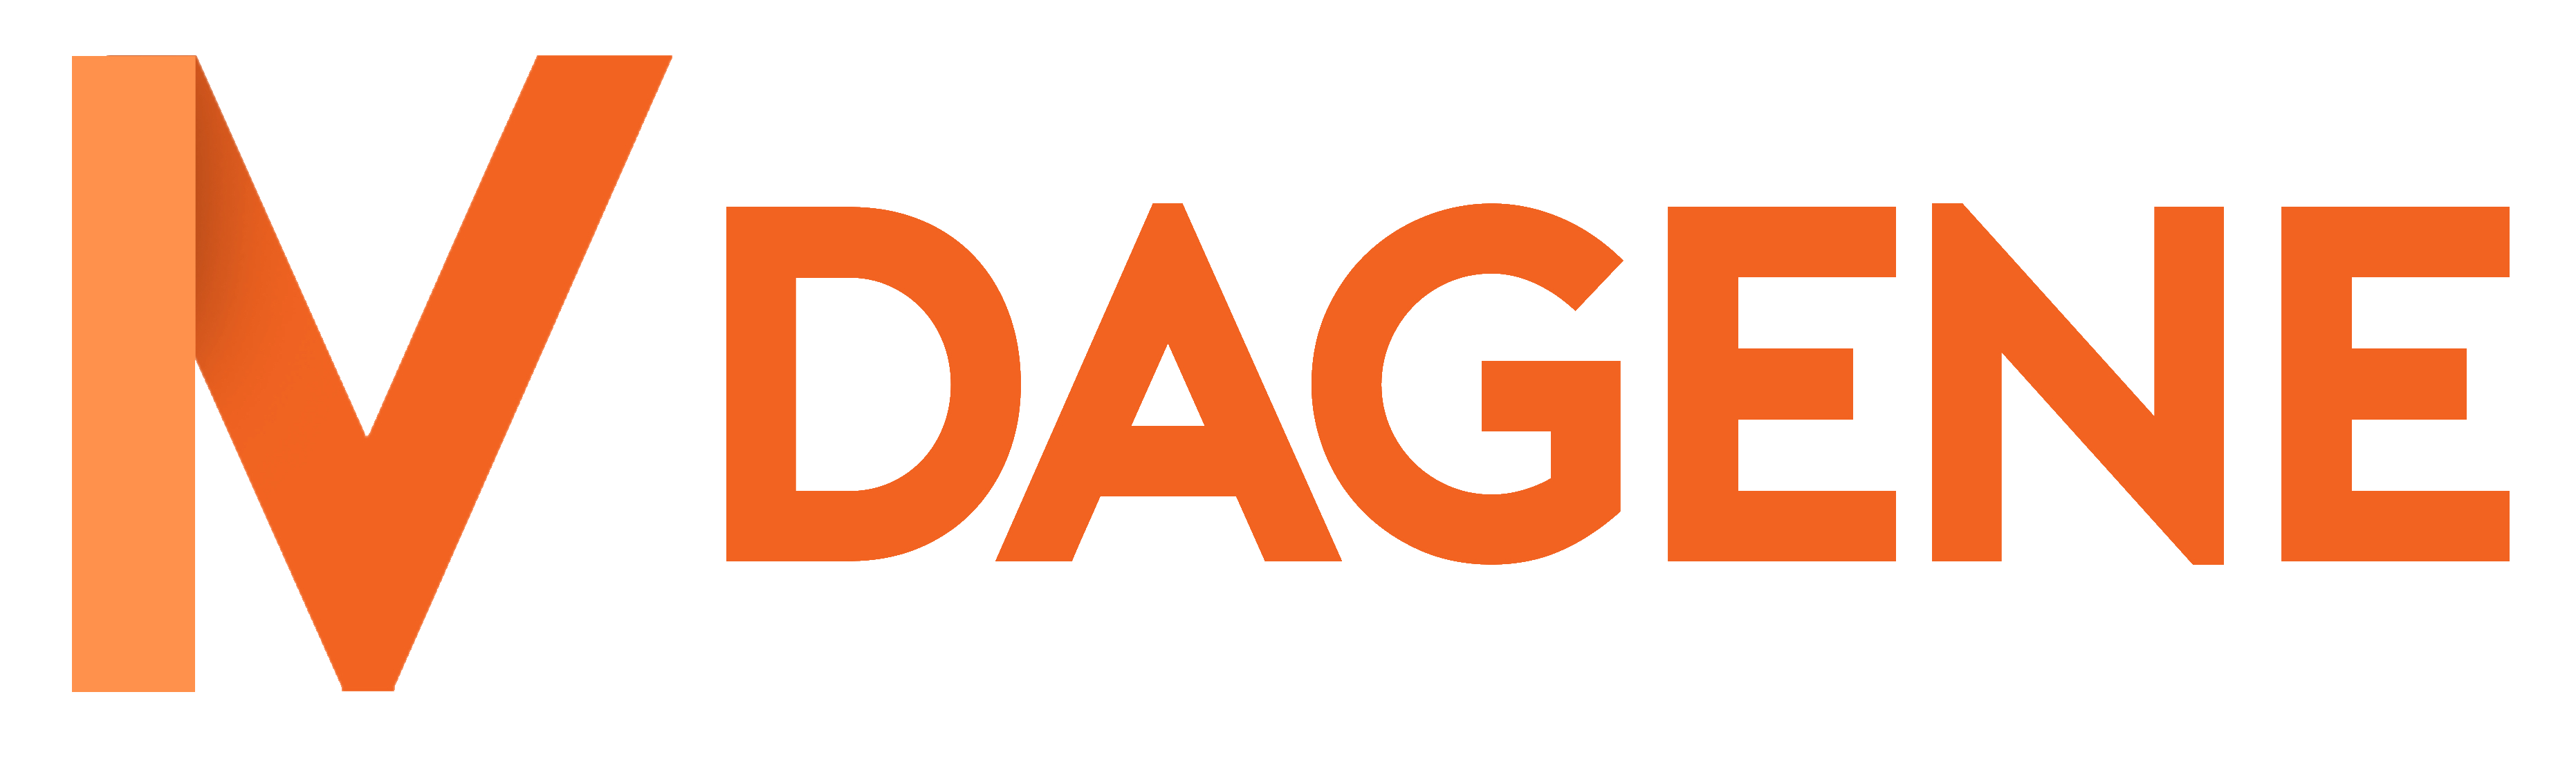 ivdagene-logo